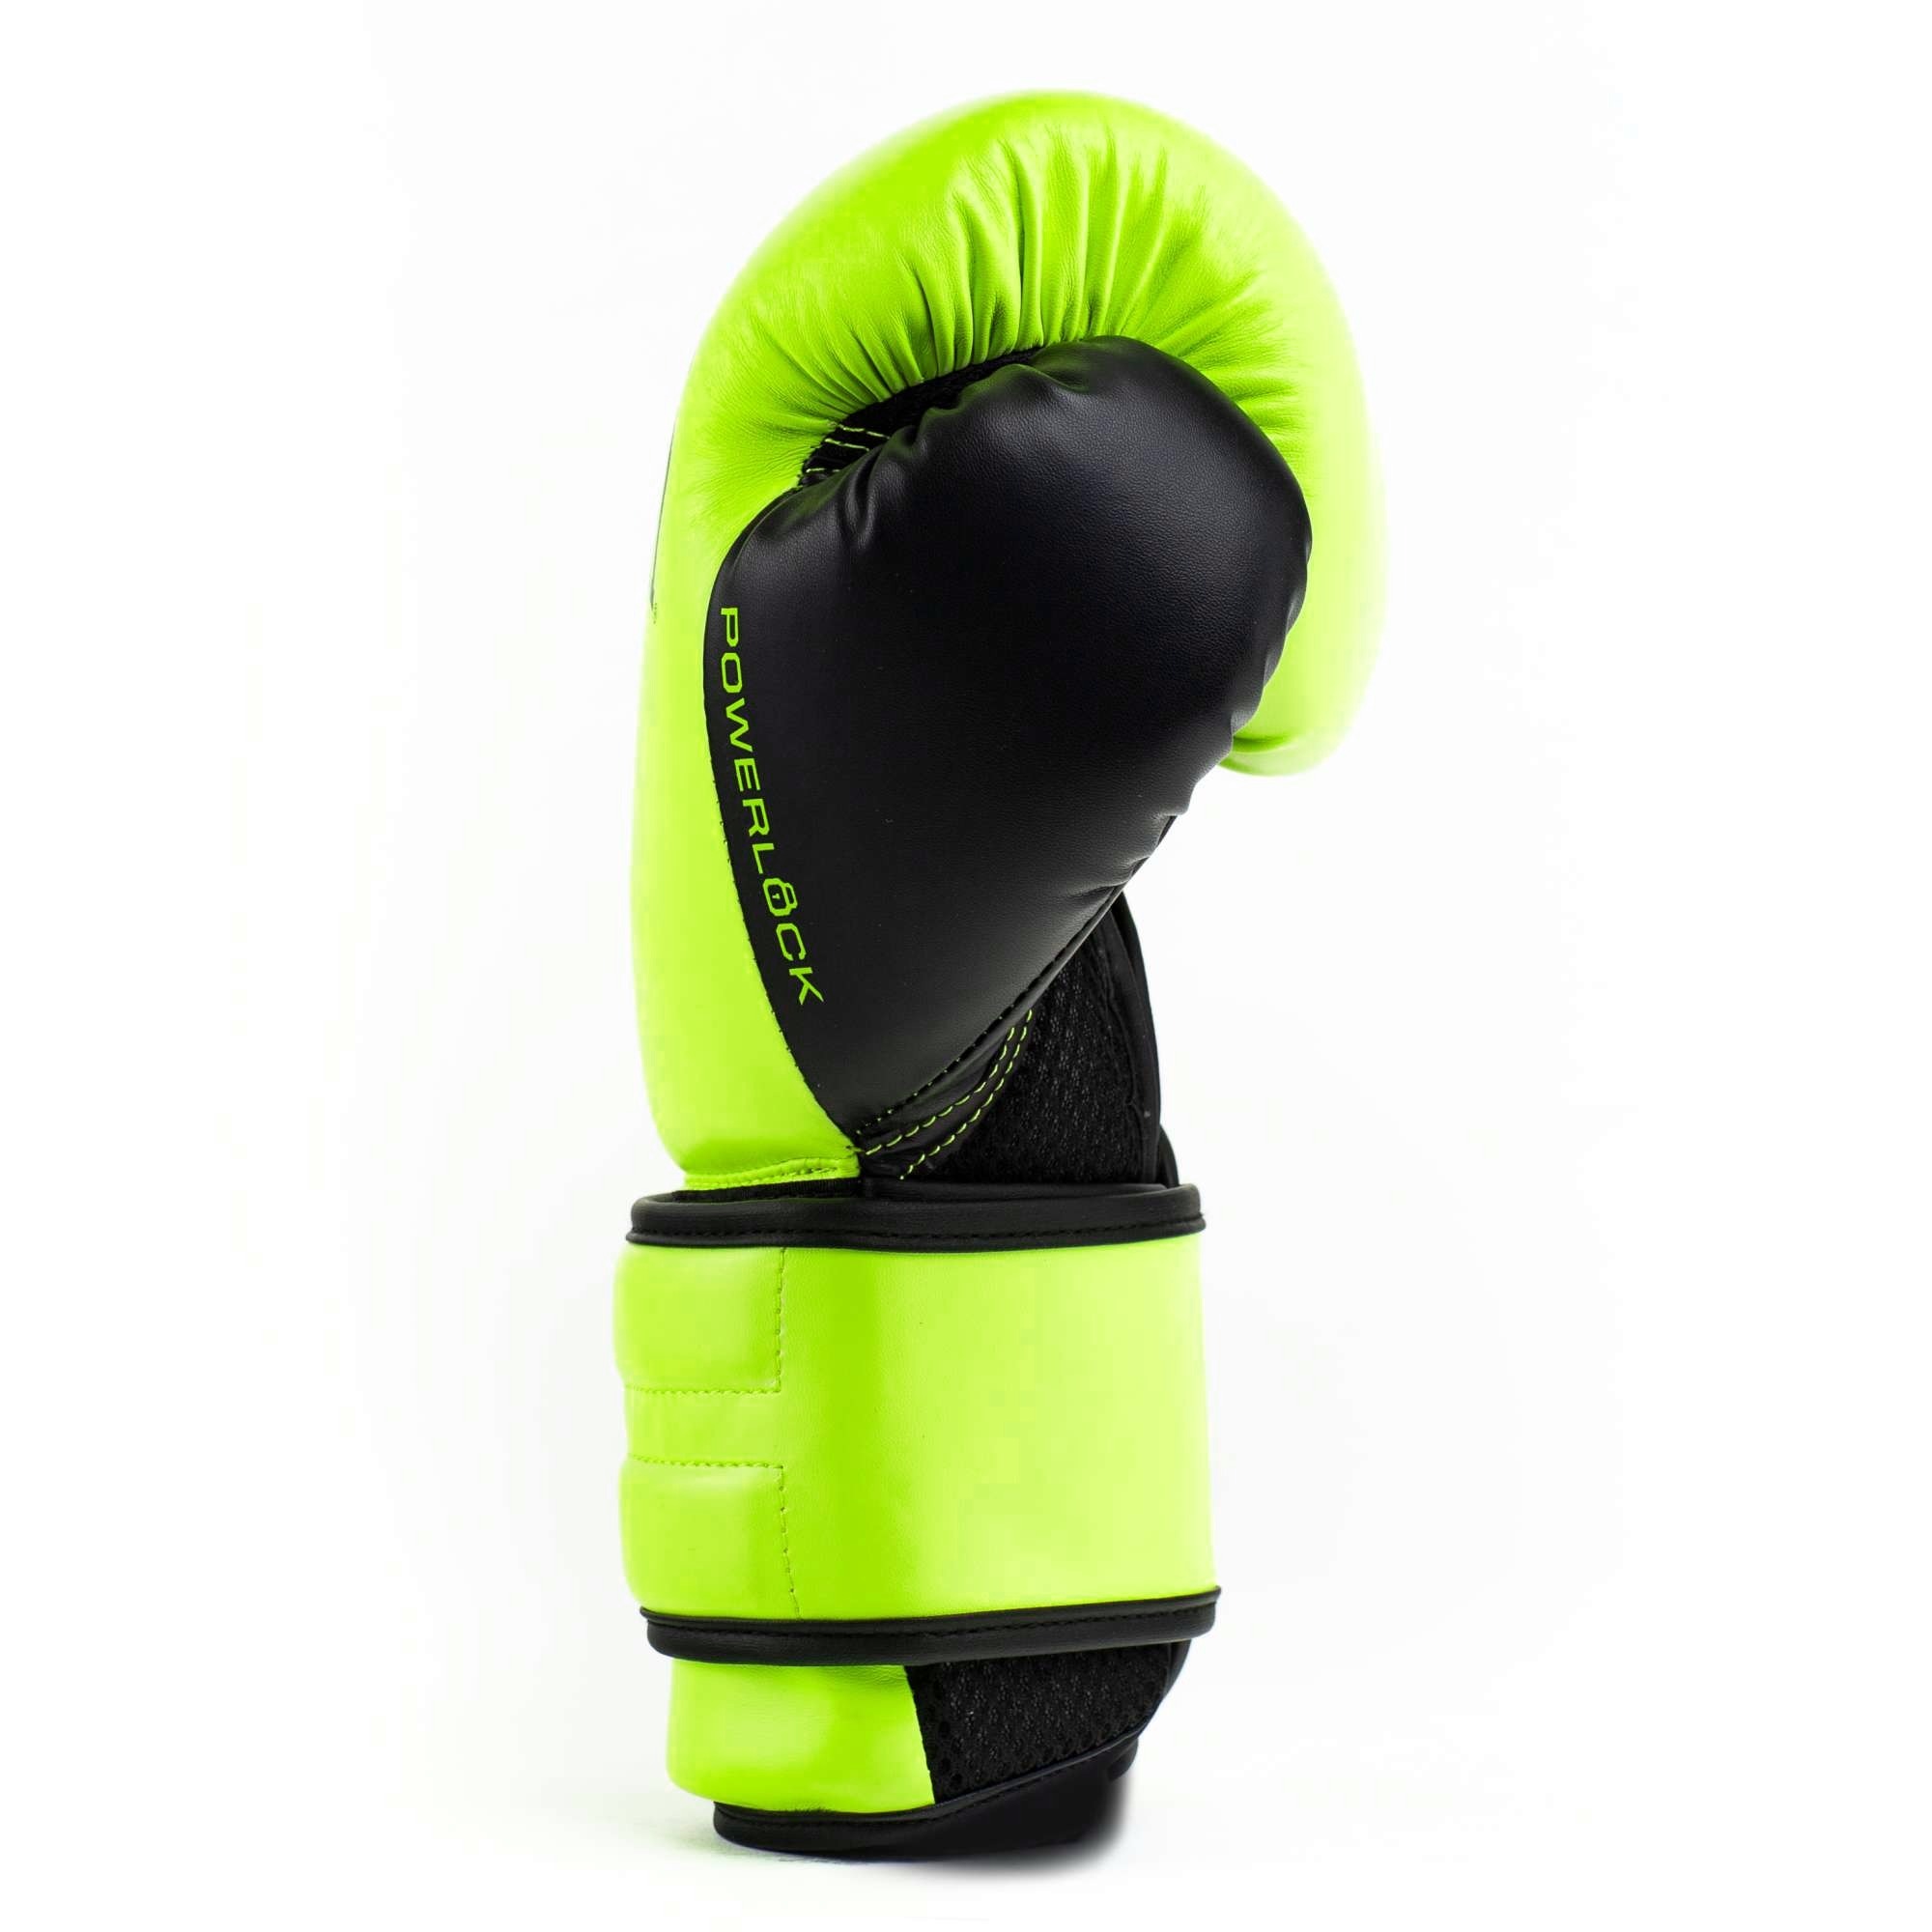  Боксерские перчатки Everlast Powerlock PU 2 салатовые 